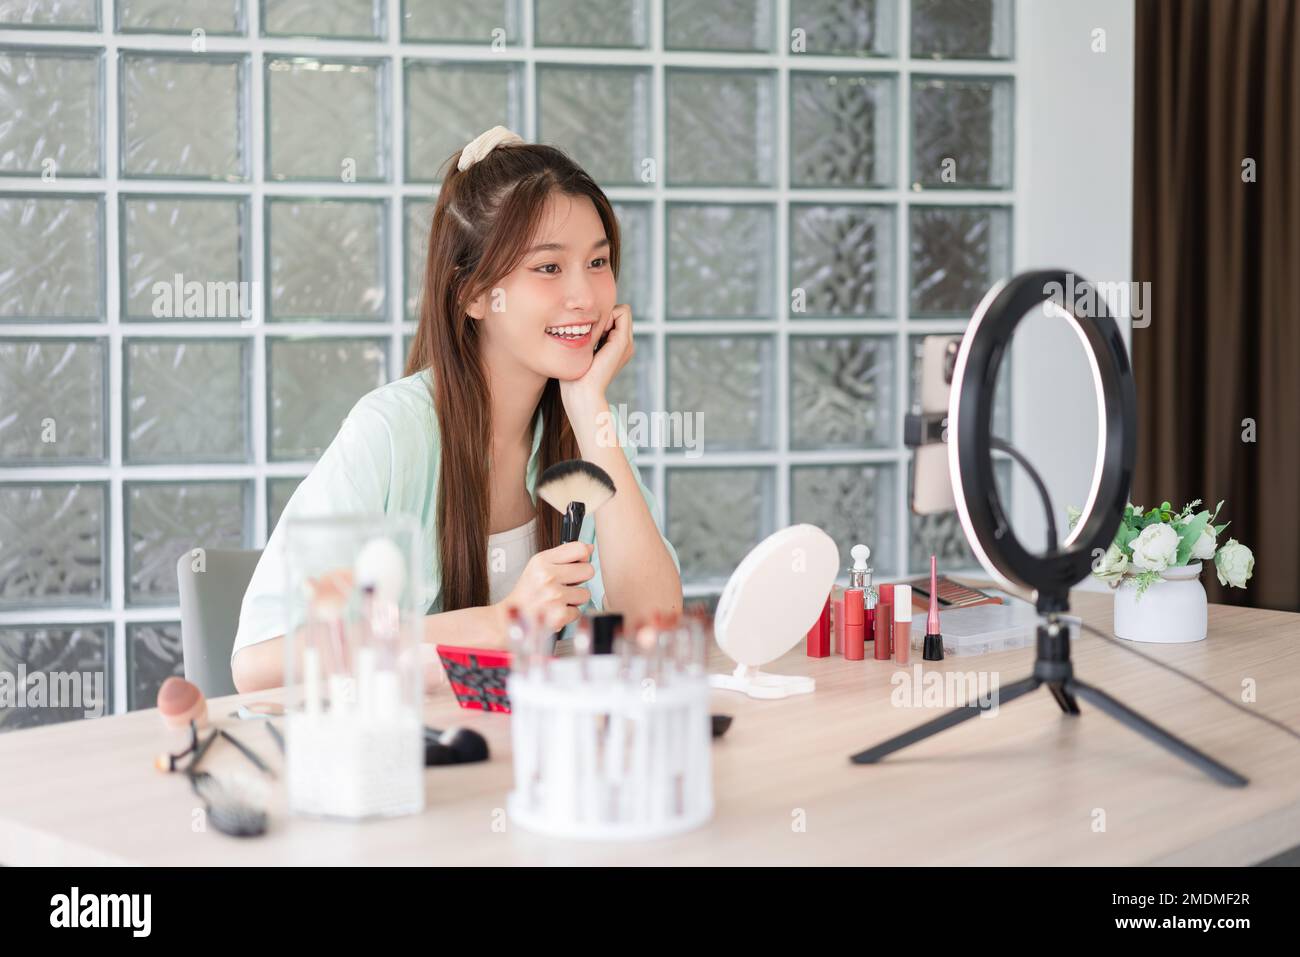 Beauty blogger concepto, la mujer joven introdujo el cepillo de maquillaje y cosméticos para grabar vídeo para Vlog. Foto de stock